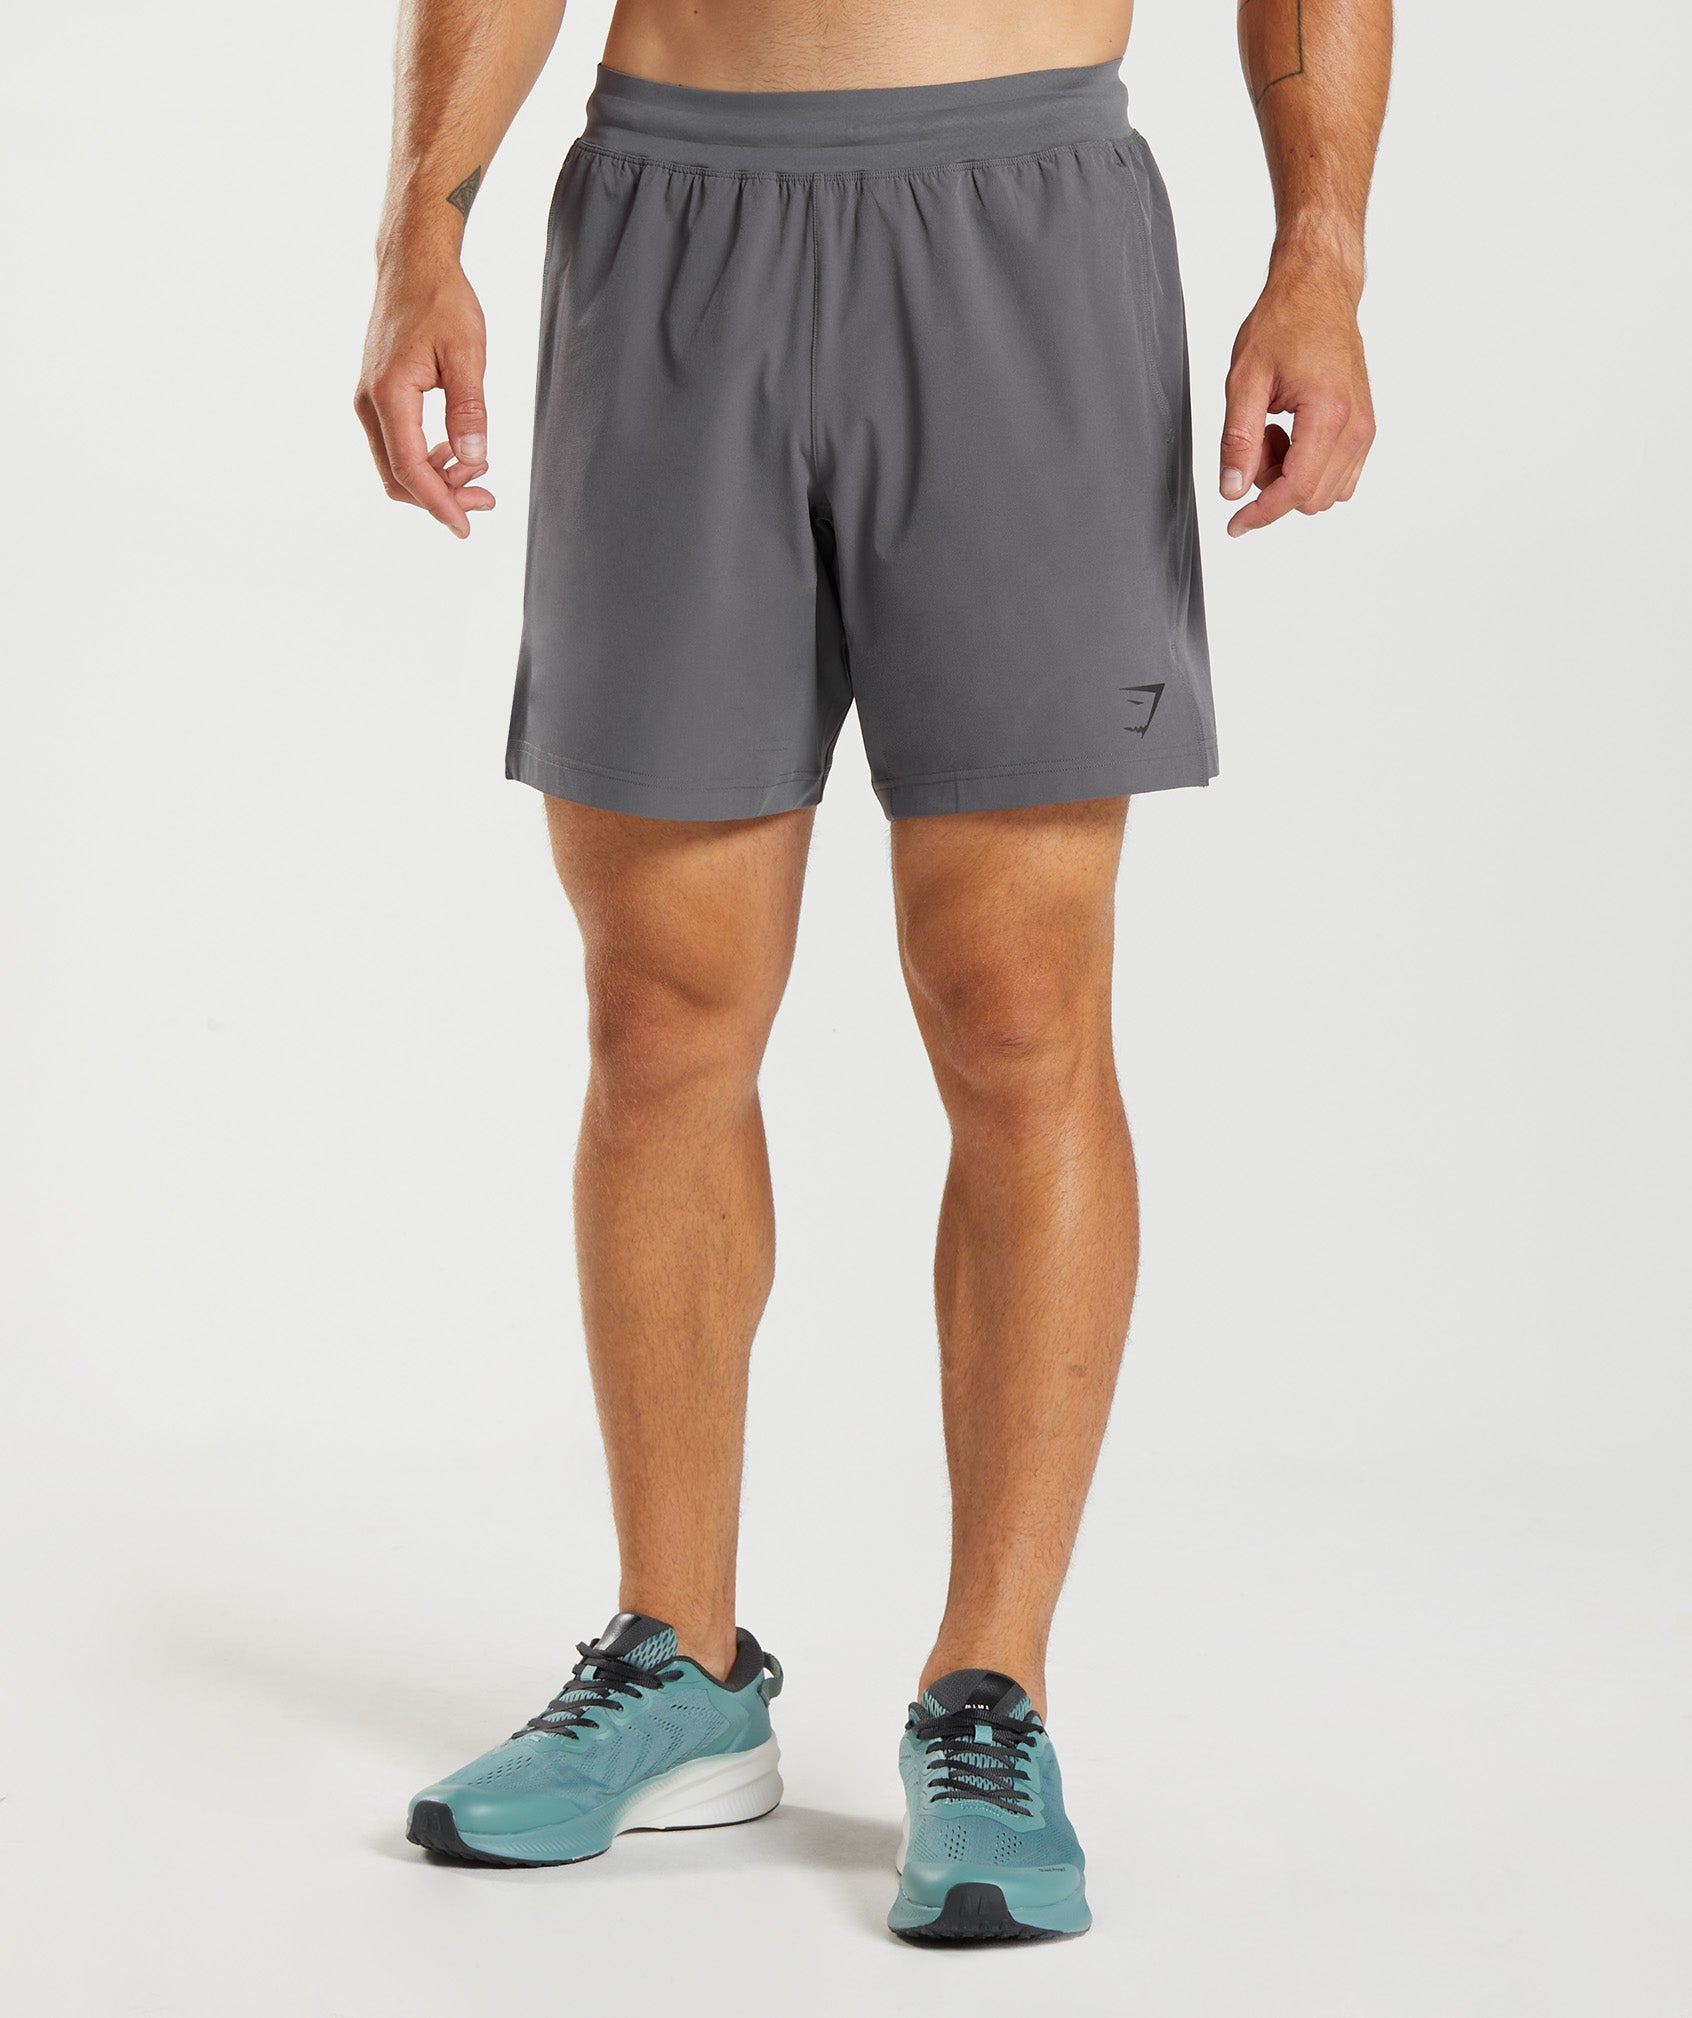 Apex 8" Function Shorts in Silhouette Grey is niet op voorraad